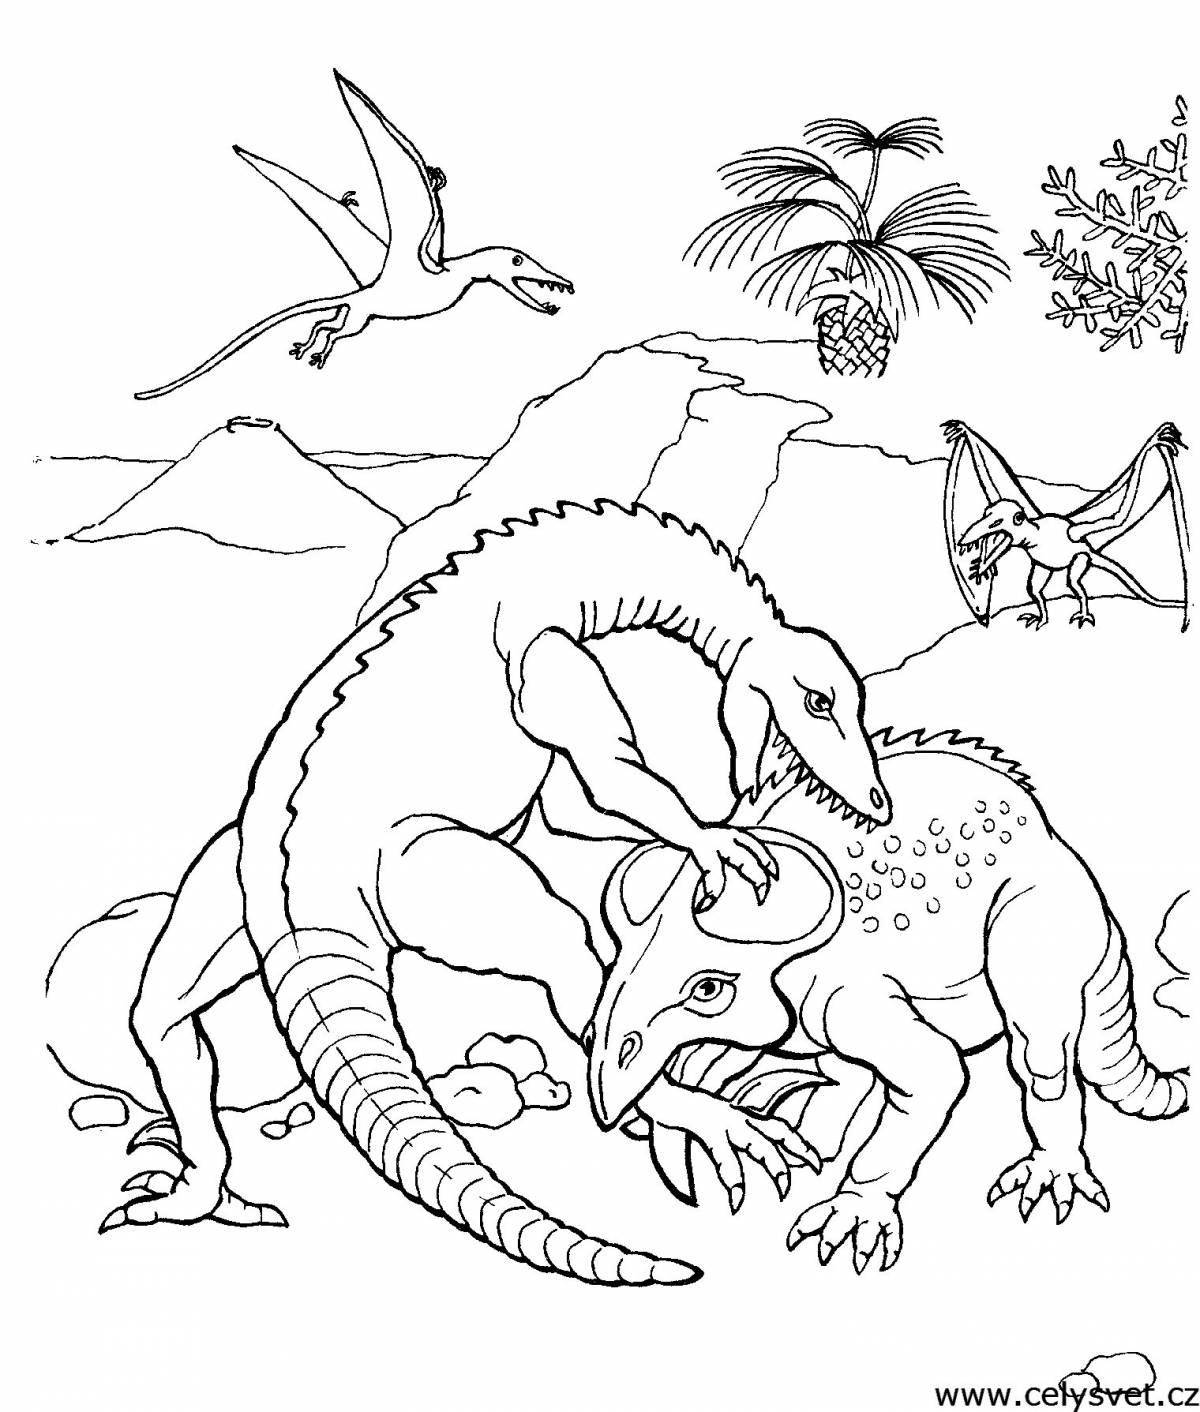 A sketch of an intense dinosaur battle